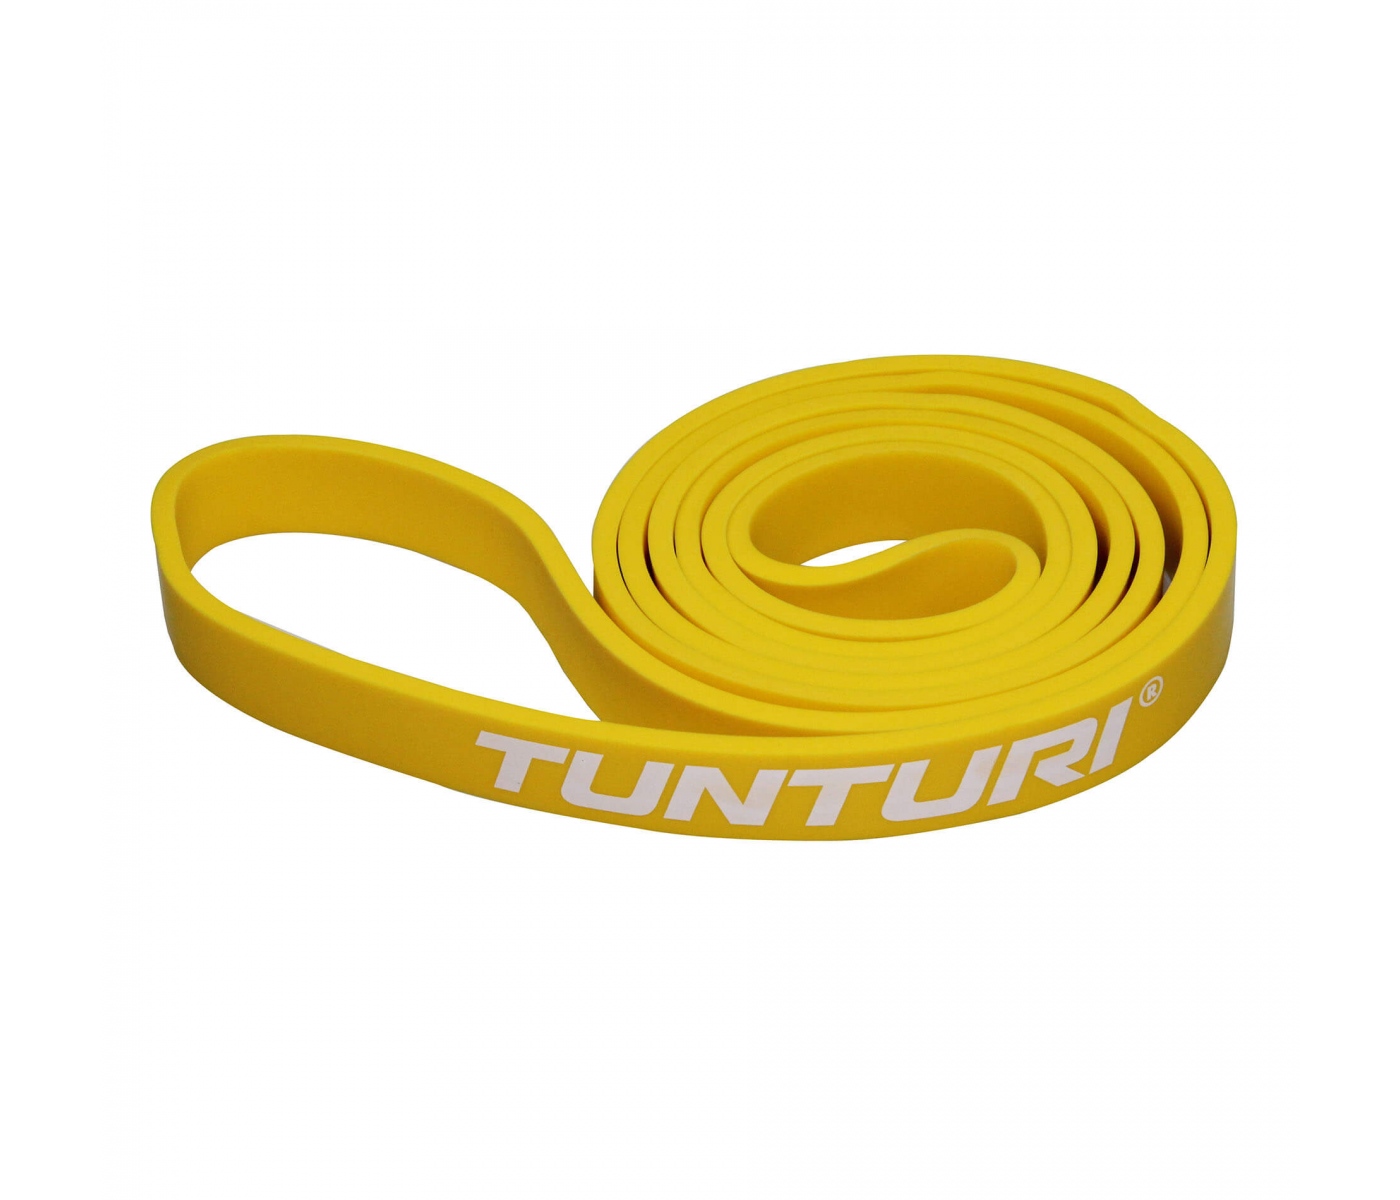 Brug Tunturi Power Band Let til en forbedret oplevelse